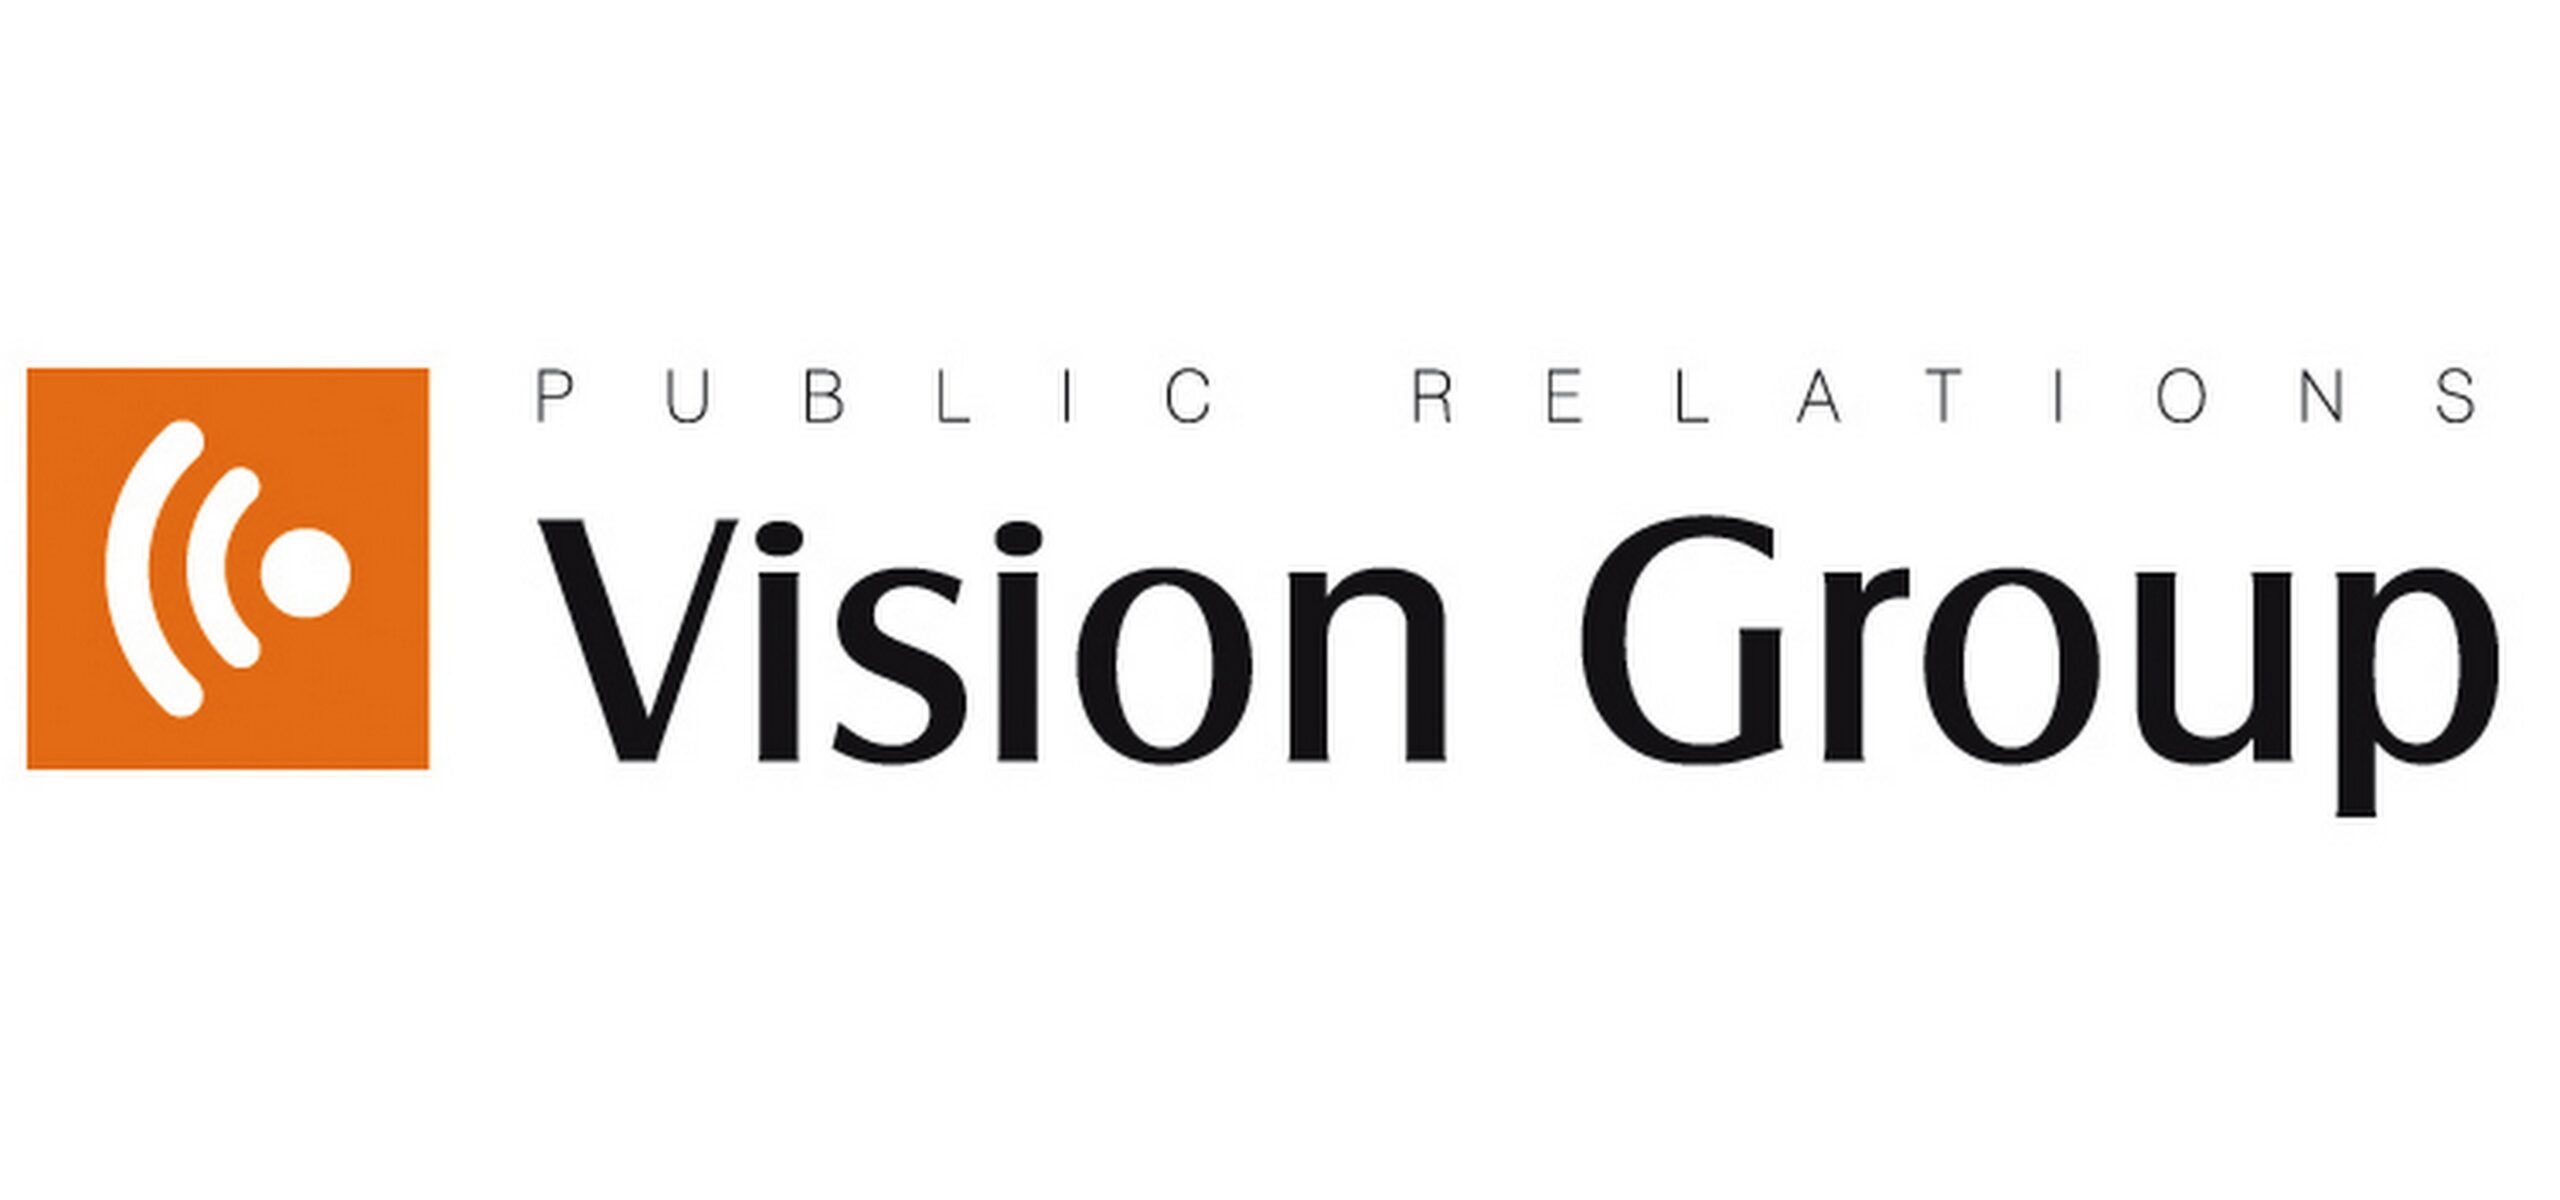 CUK Ubezpieczenia we współpracy z Vision Group CUK Ubezpieczenia Mediarun Com Vision Group scaled